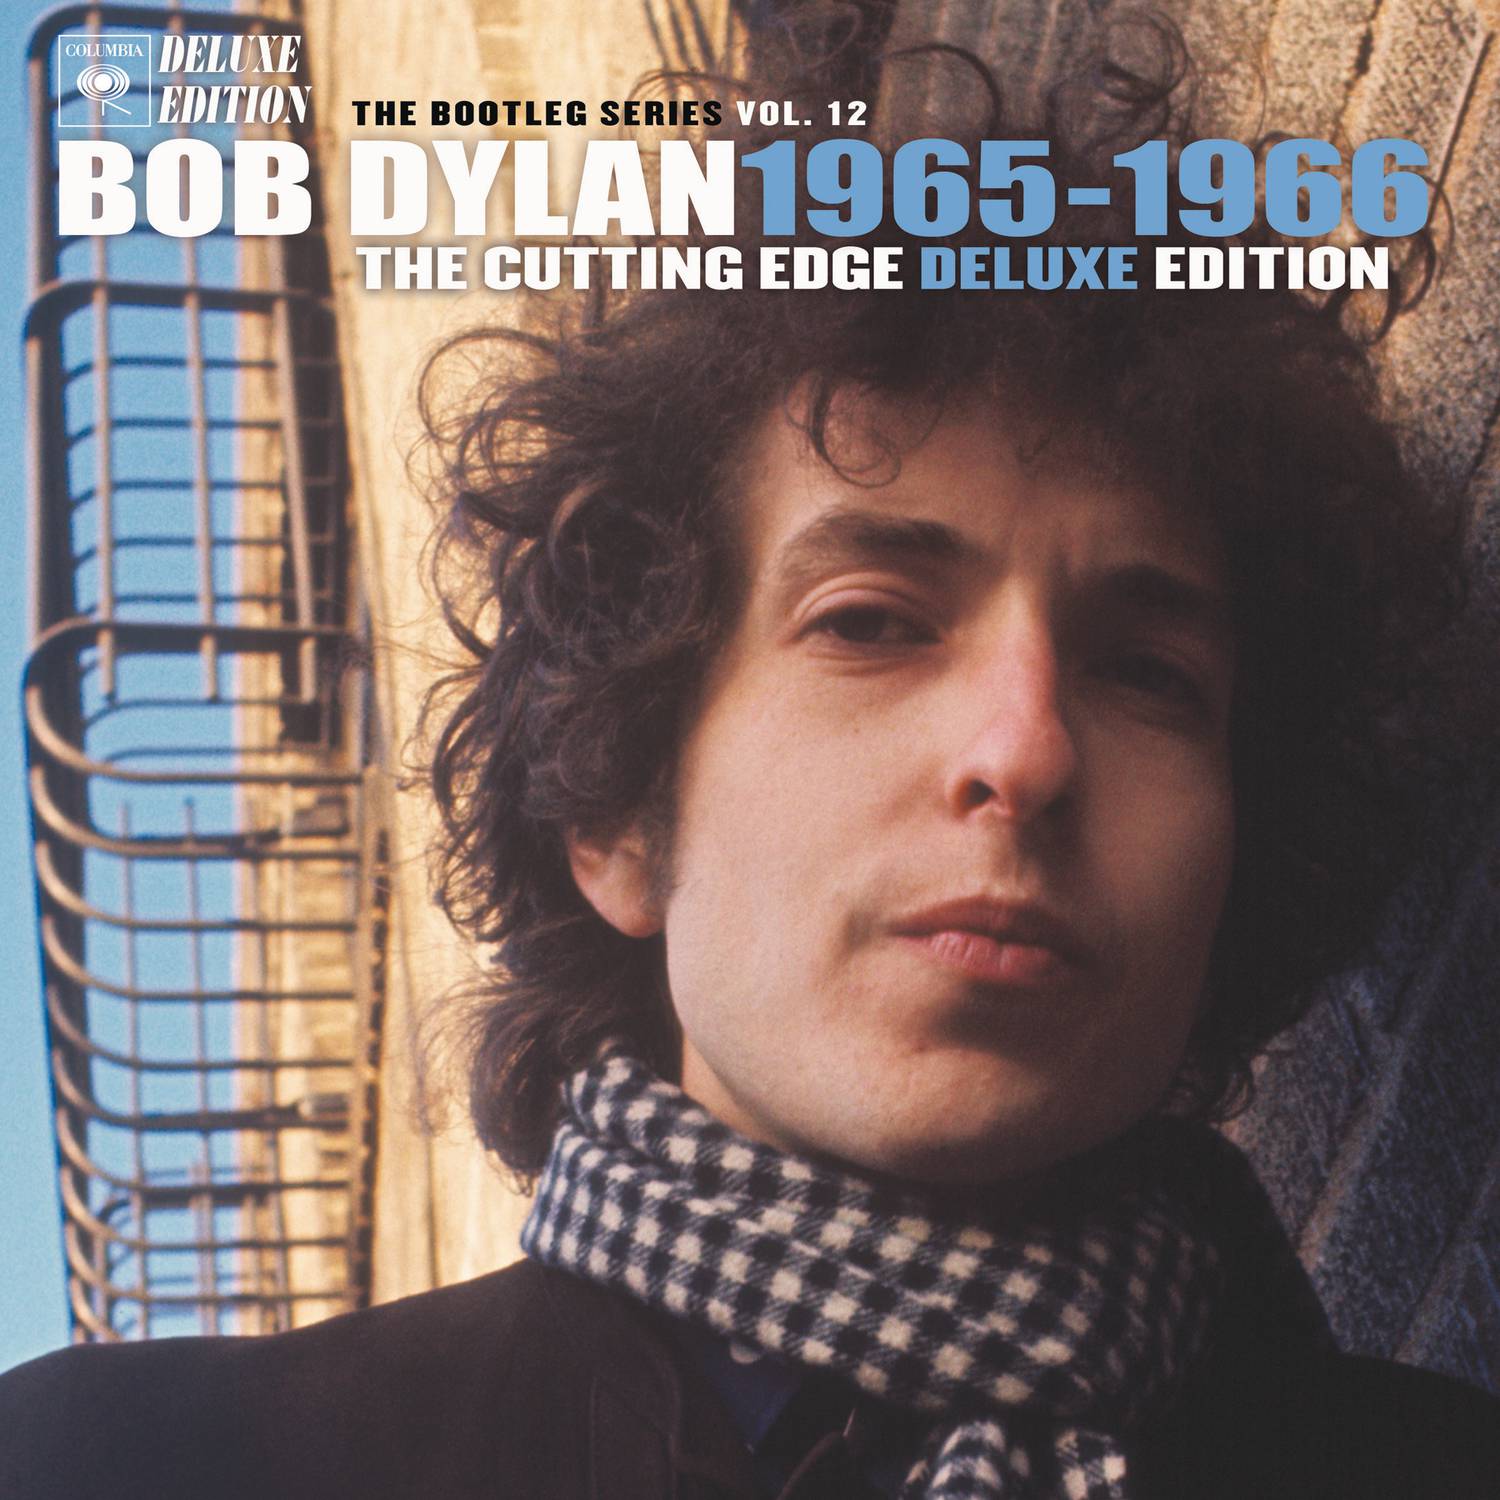 Bob Dylan's 115th Dream (Take 1, Fragment)